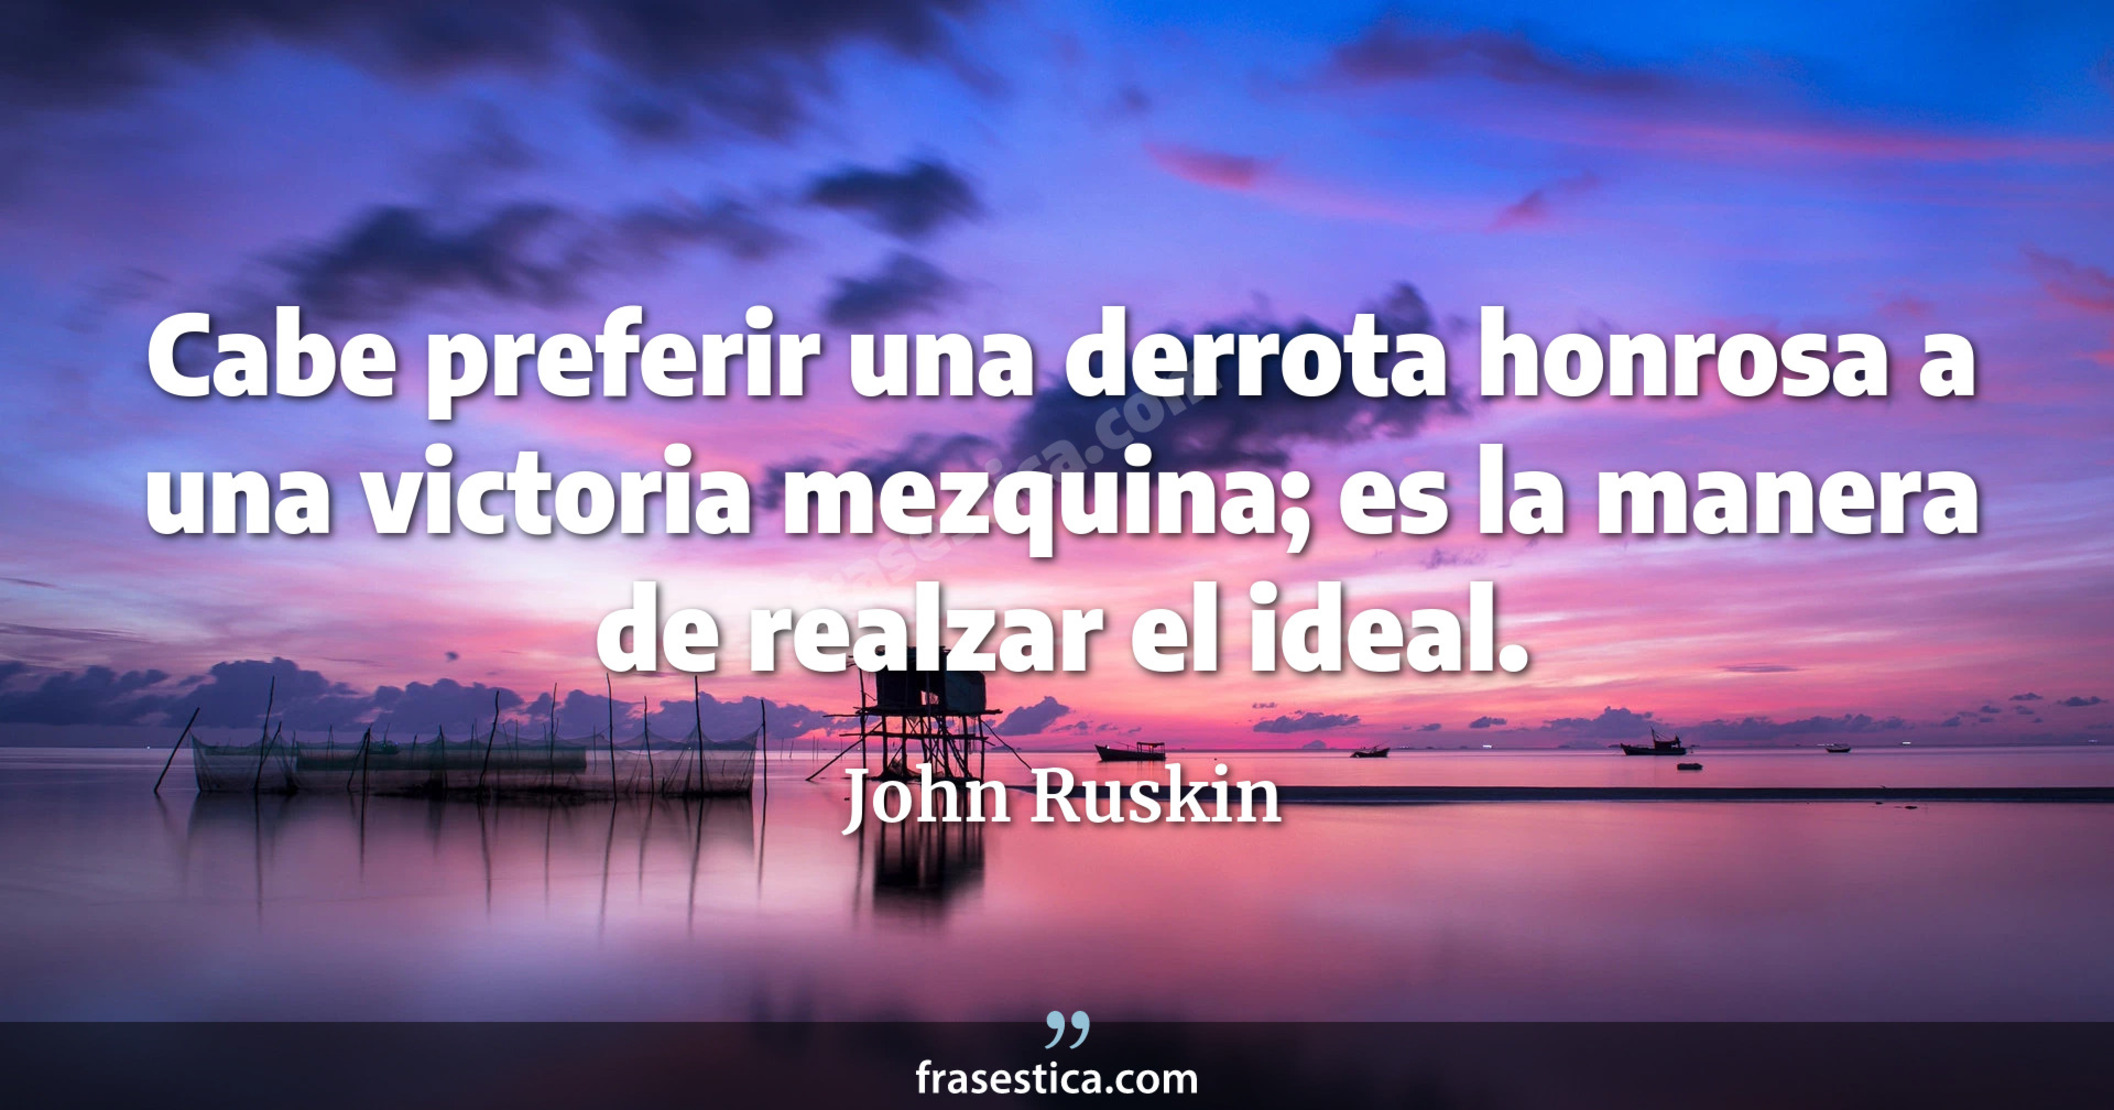 Cabe preferir una derrota honrosa a una victoria mezquina; es la manera de realzar el ideal. - John Ruskin